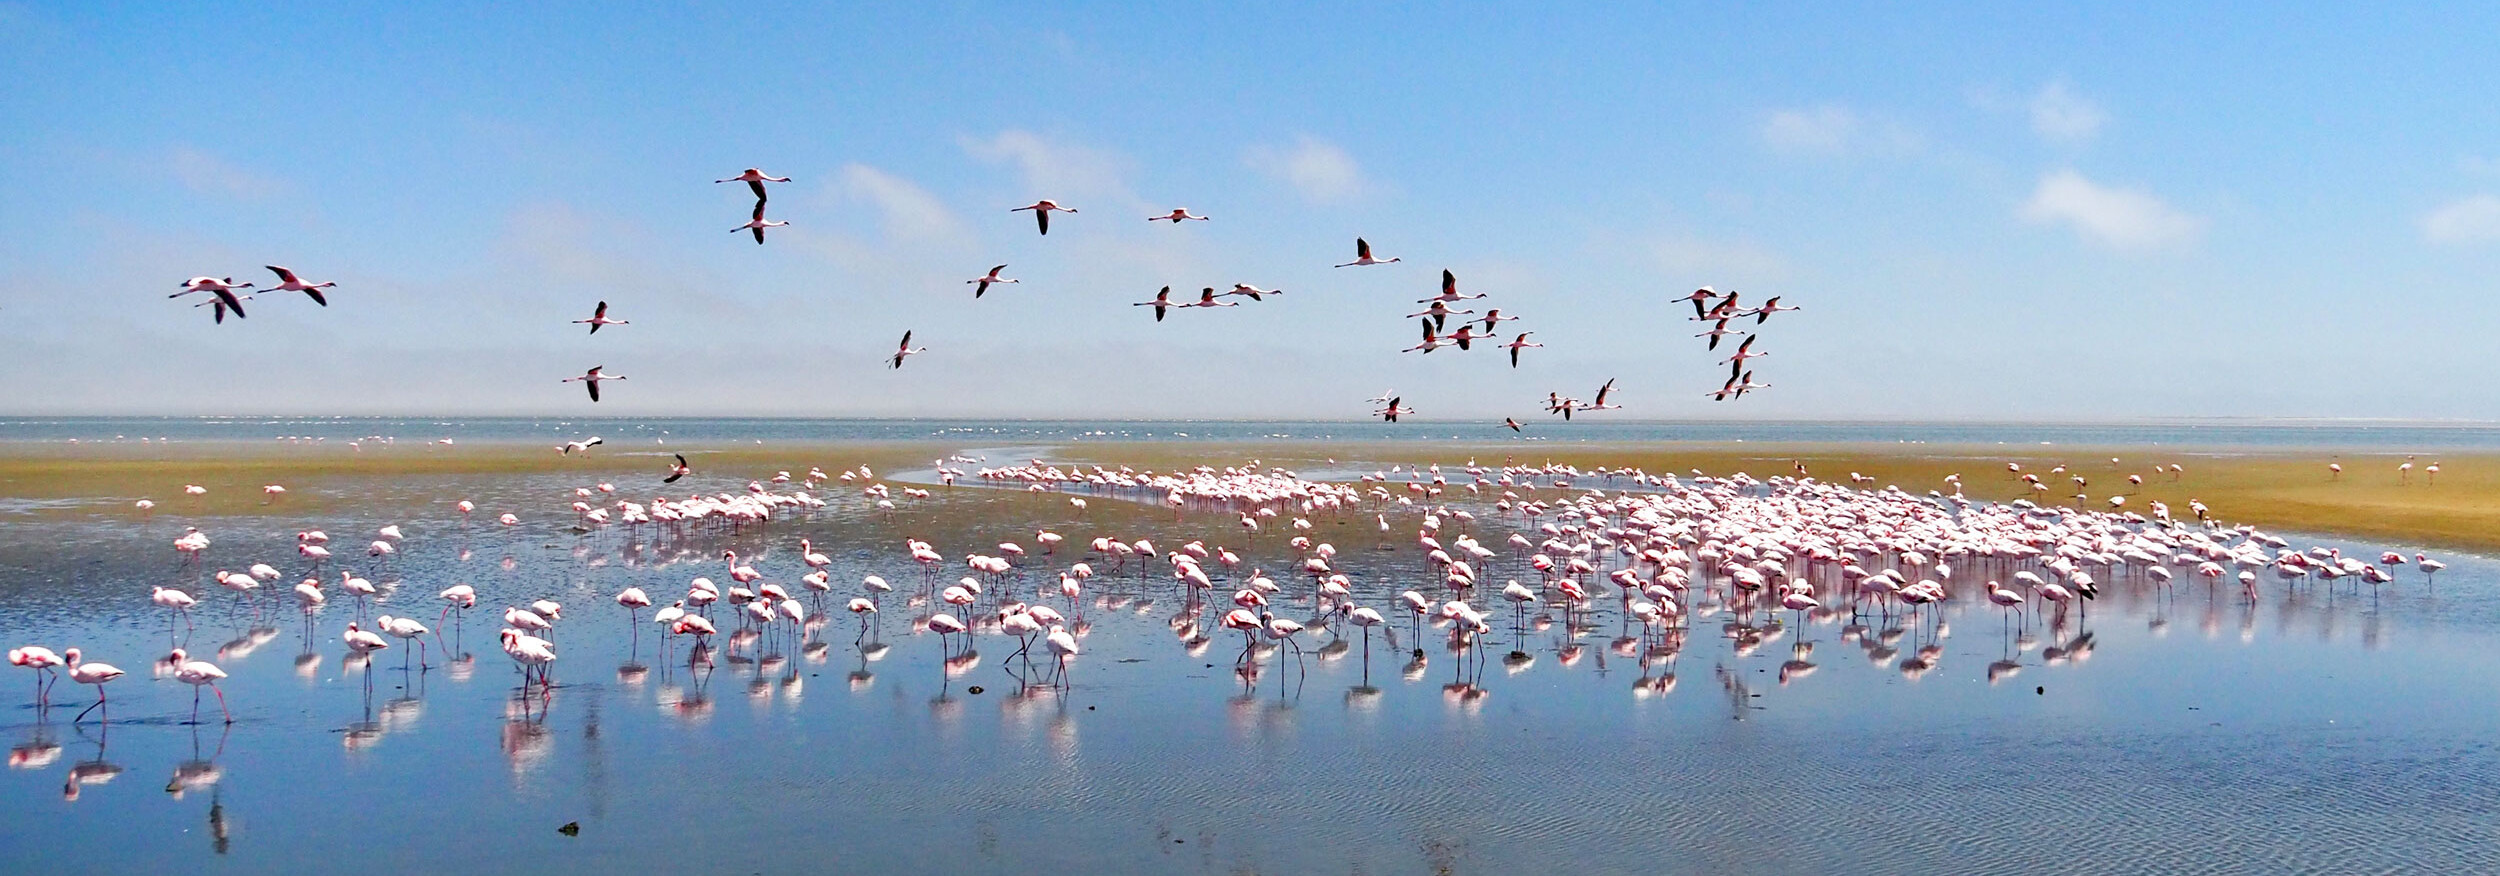 Namibia Reisebericht: Flamingos